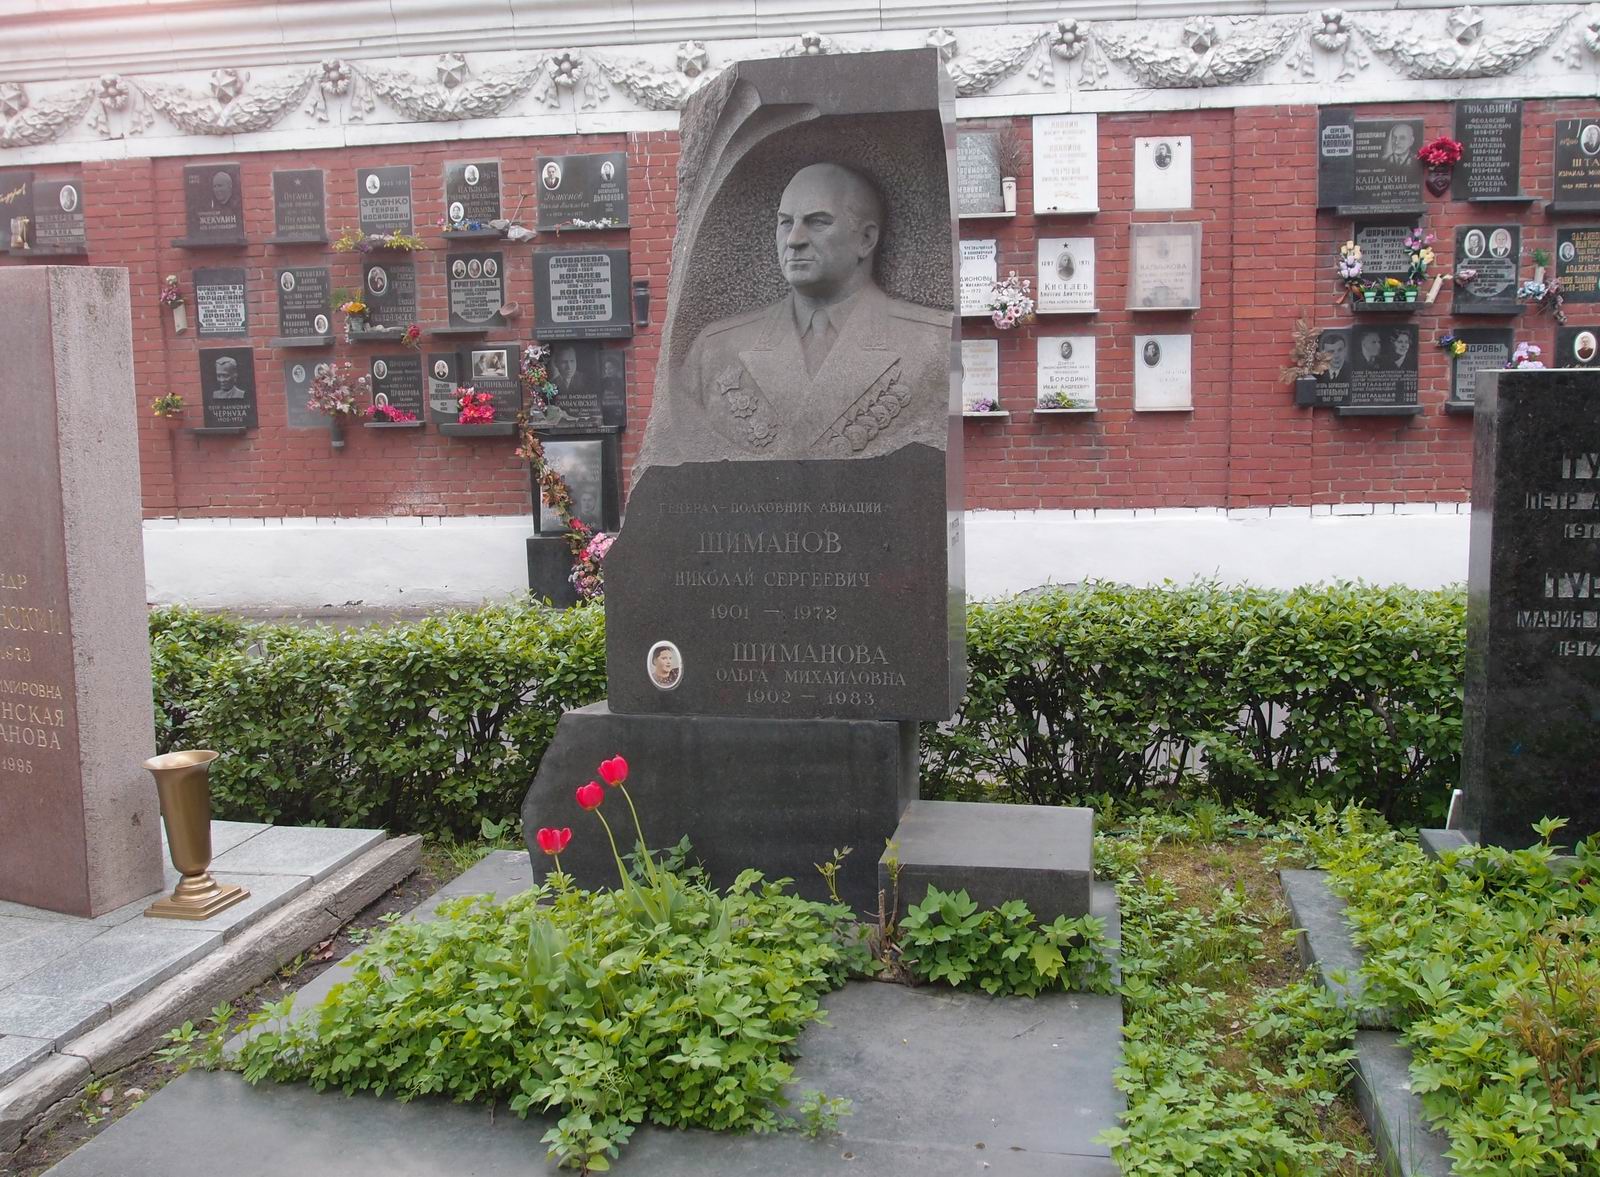 Памятник на могиле Шиманова Н.С. (1901–1972), на Новодевичьем кладбище (7–21–5). Нажмите левую кнопку мыши чтобы увидеть фрагмент памятника.